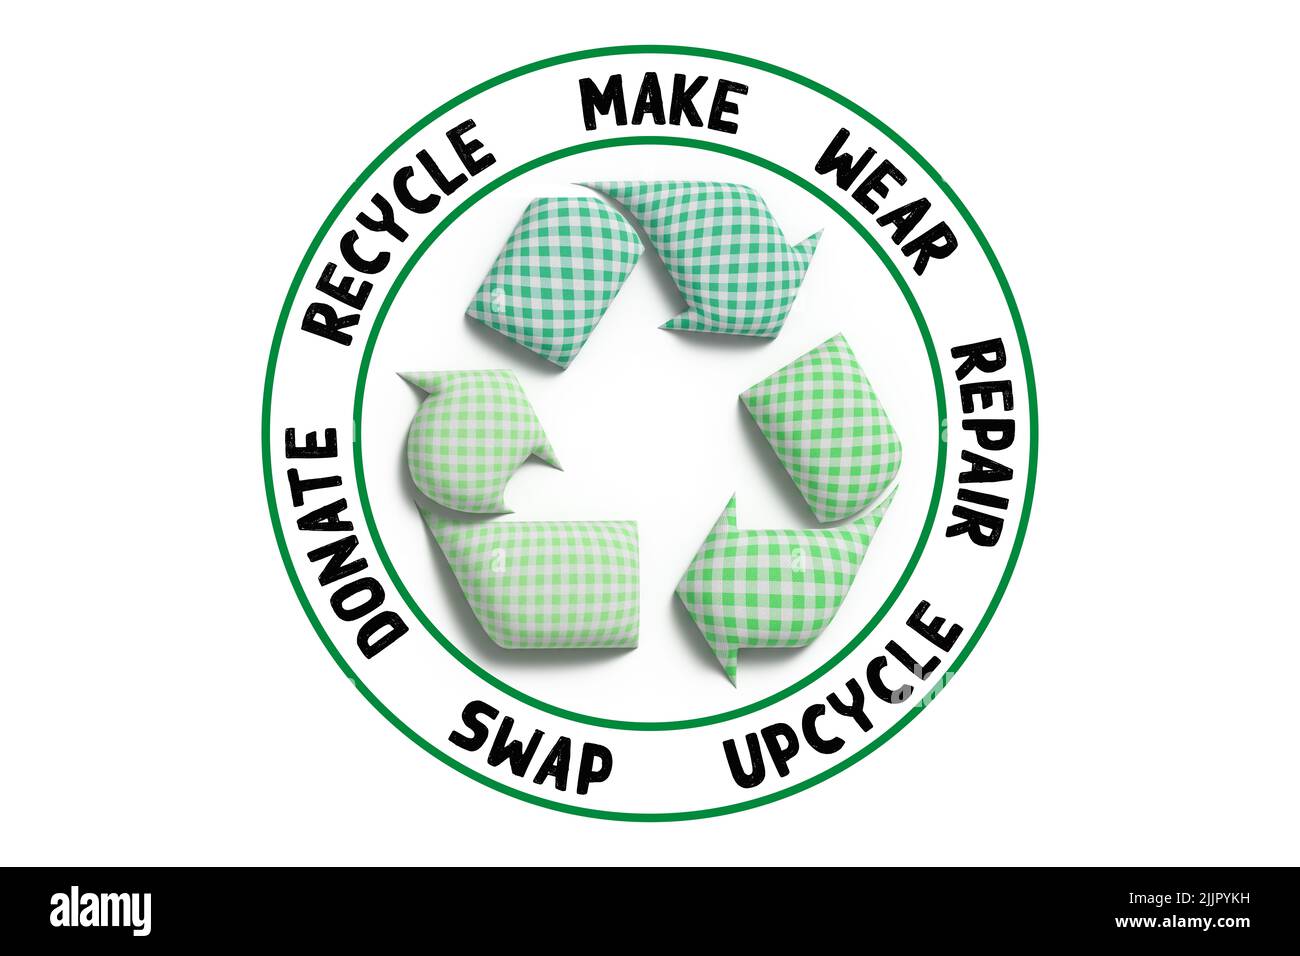 Circular de moda, marca, desgaste, reparación, upcycle, intercambiar, donar, reciclar con tela reciclar icono concepto de moda sostenible Foto de stock